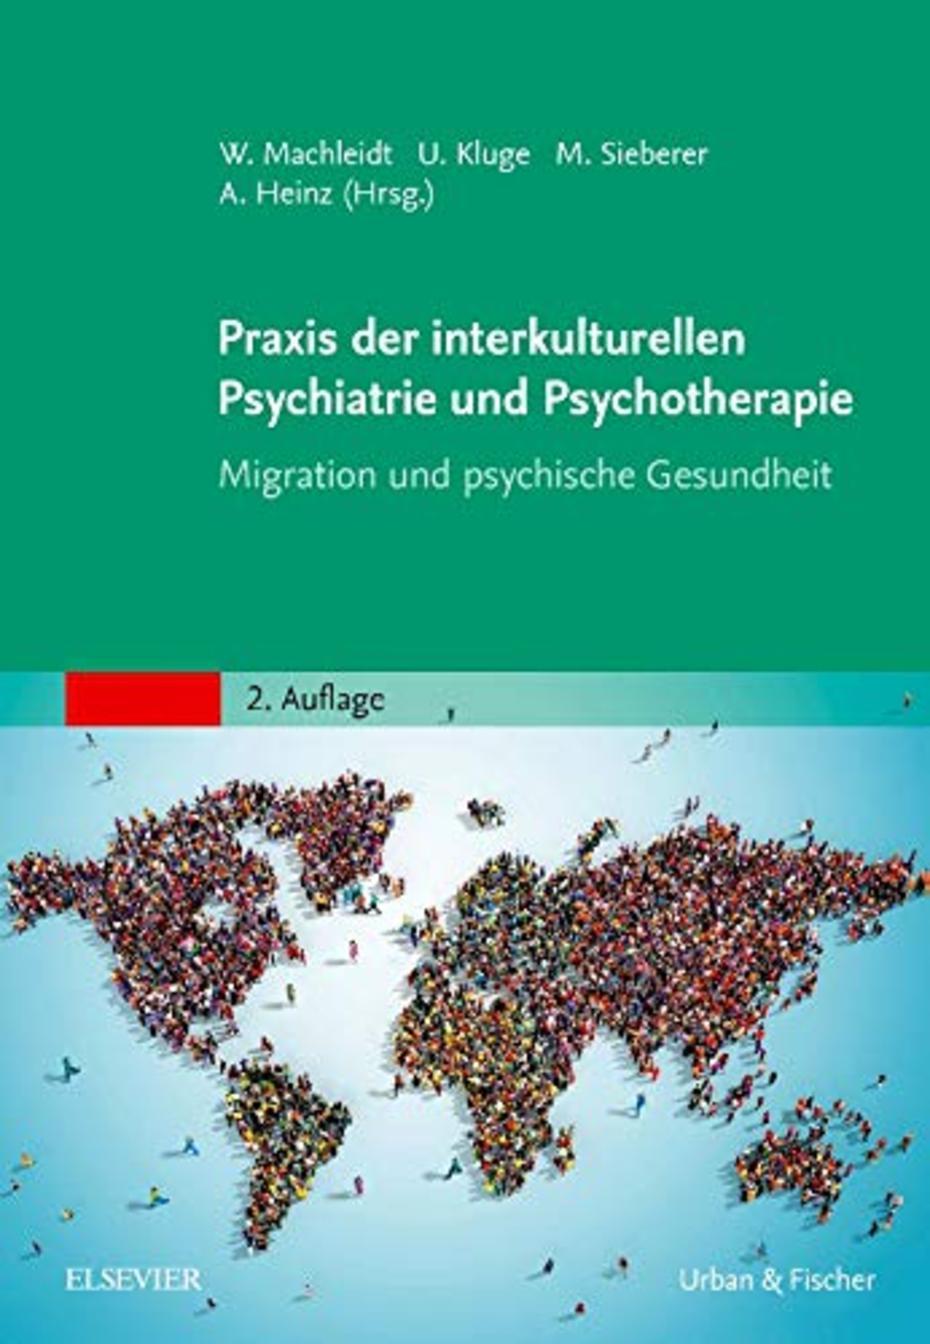 Praxis der interkulturellen Psychiatrie und Psychotherapie (Cover)